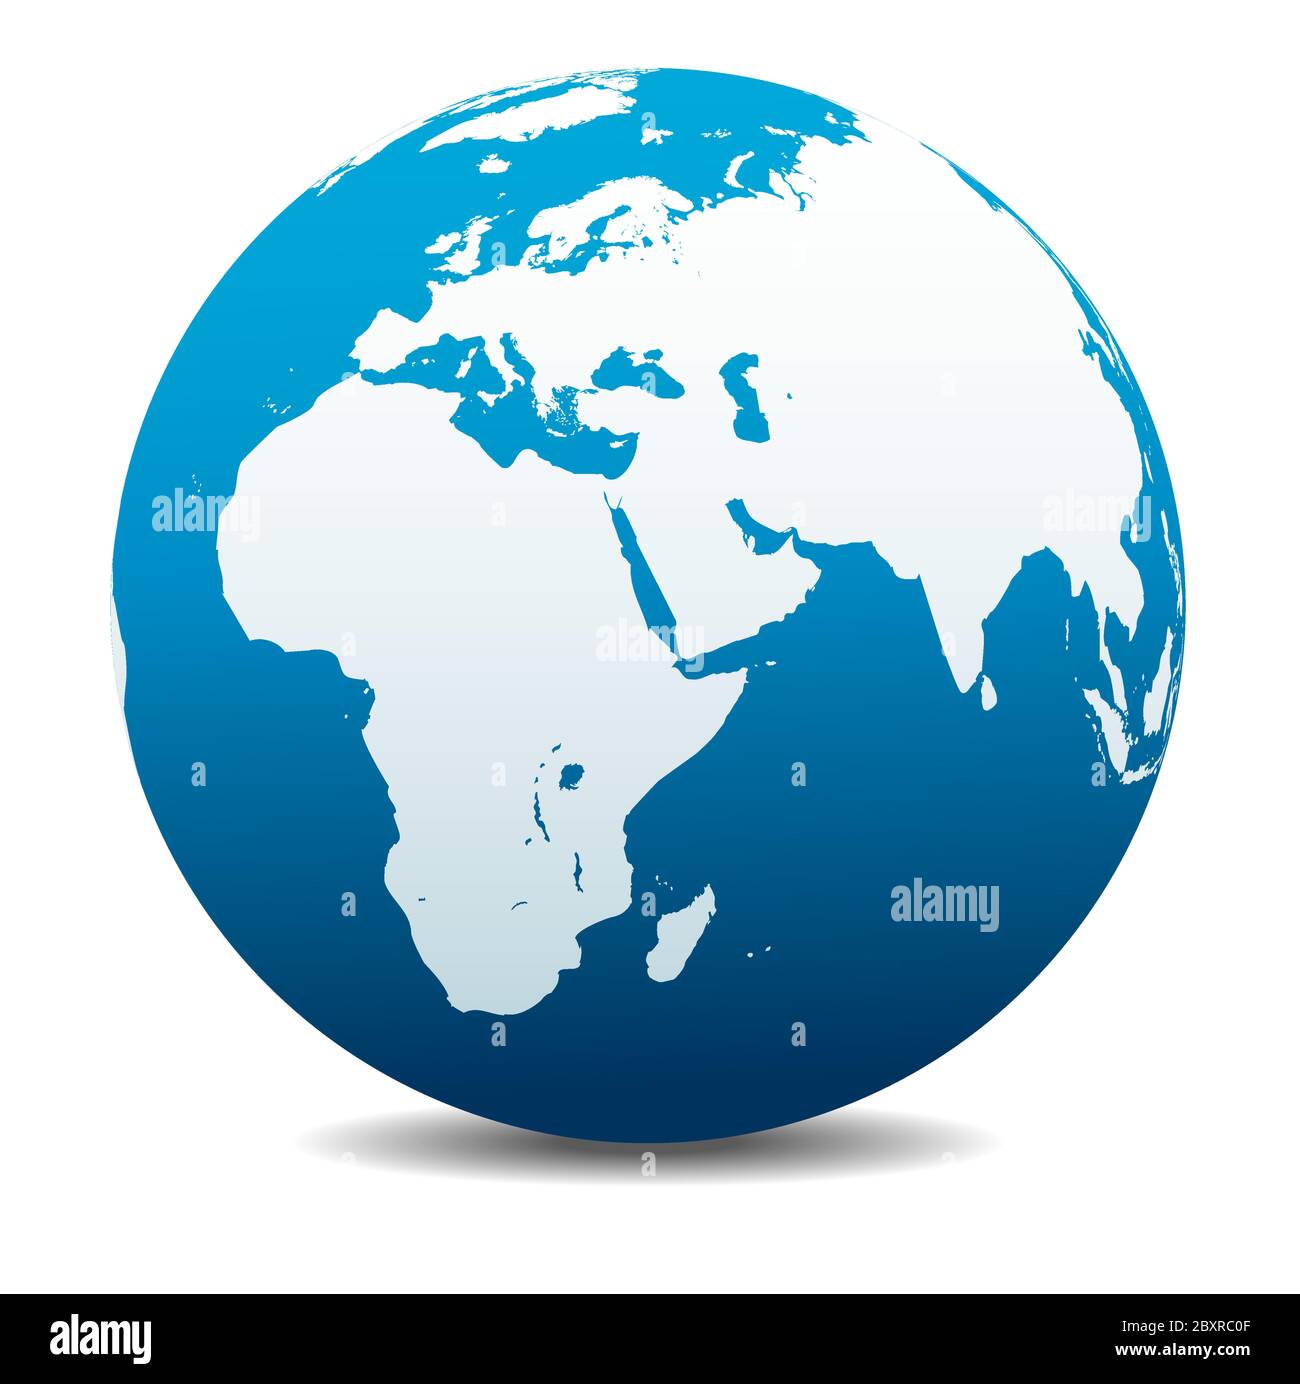 Afrique, Moyen-Orient, Arabie et Inde. Icône carte vectorielle du globe terrestre, Terre. Tous les éléments se trouvent sur des calques individuels dans le fichier vectoriel. Illustration de Vecteur